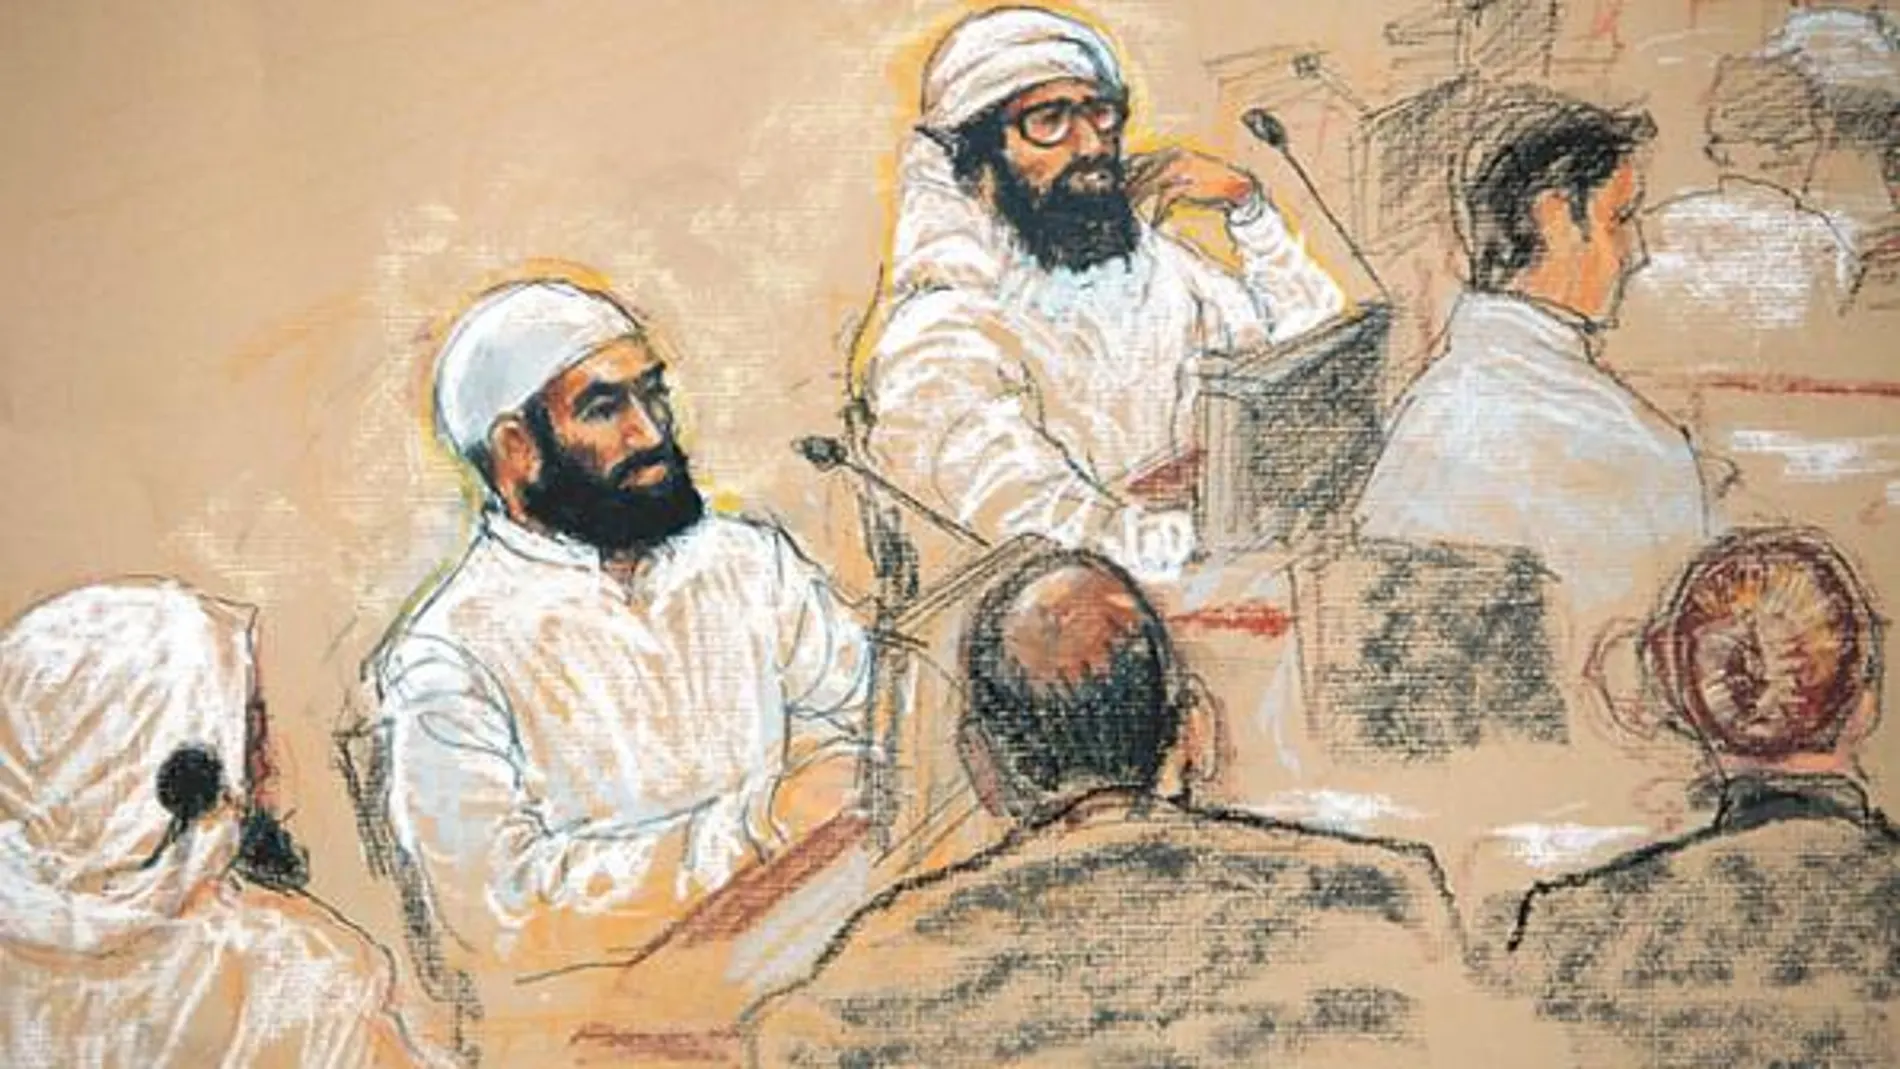 Los conspiradores del 11-S, Ben Attash, Aziz Ali y al Hawsawi comparecen ante el juez, en Guantánamo